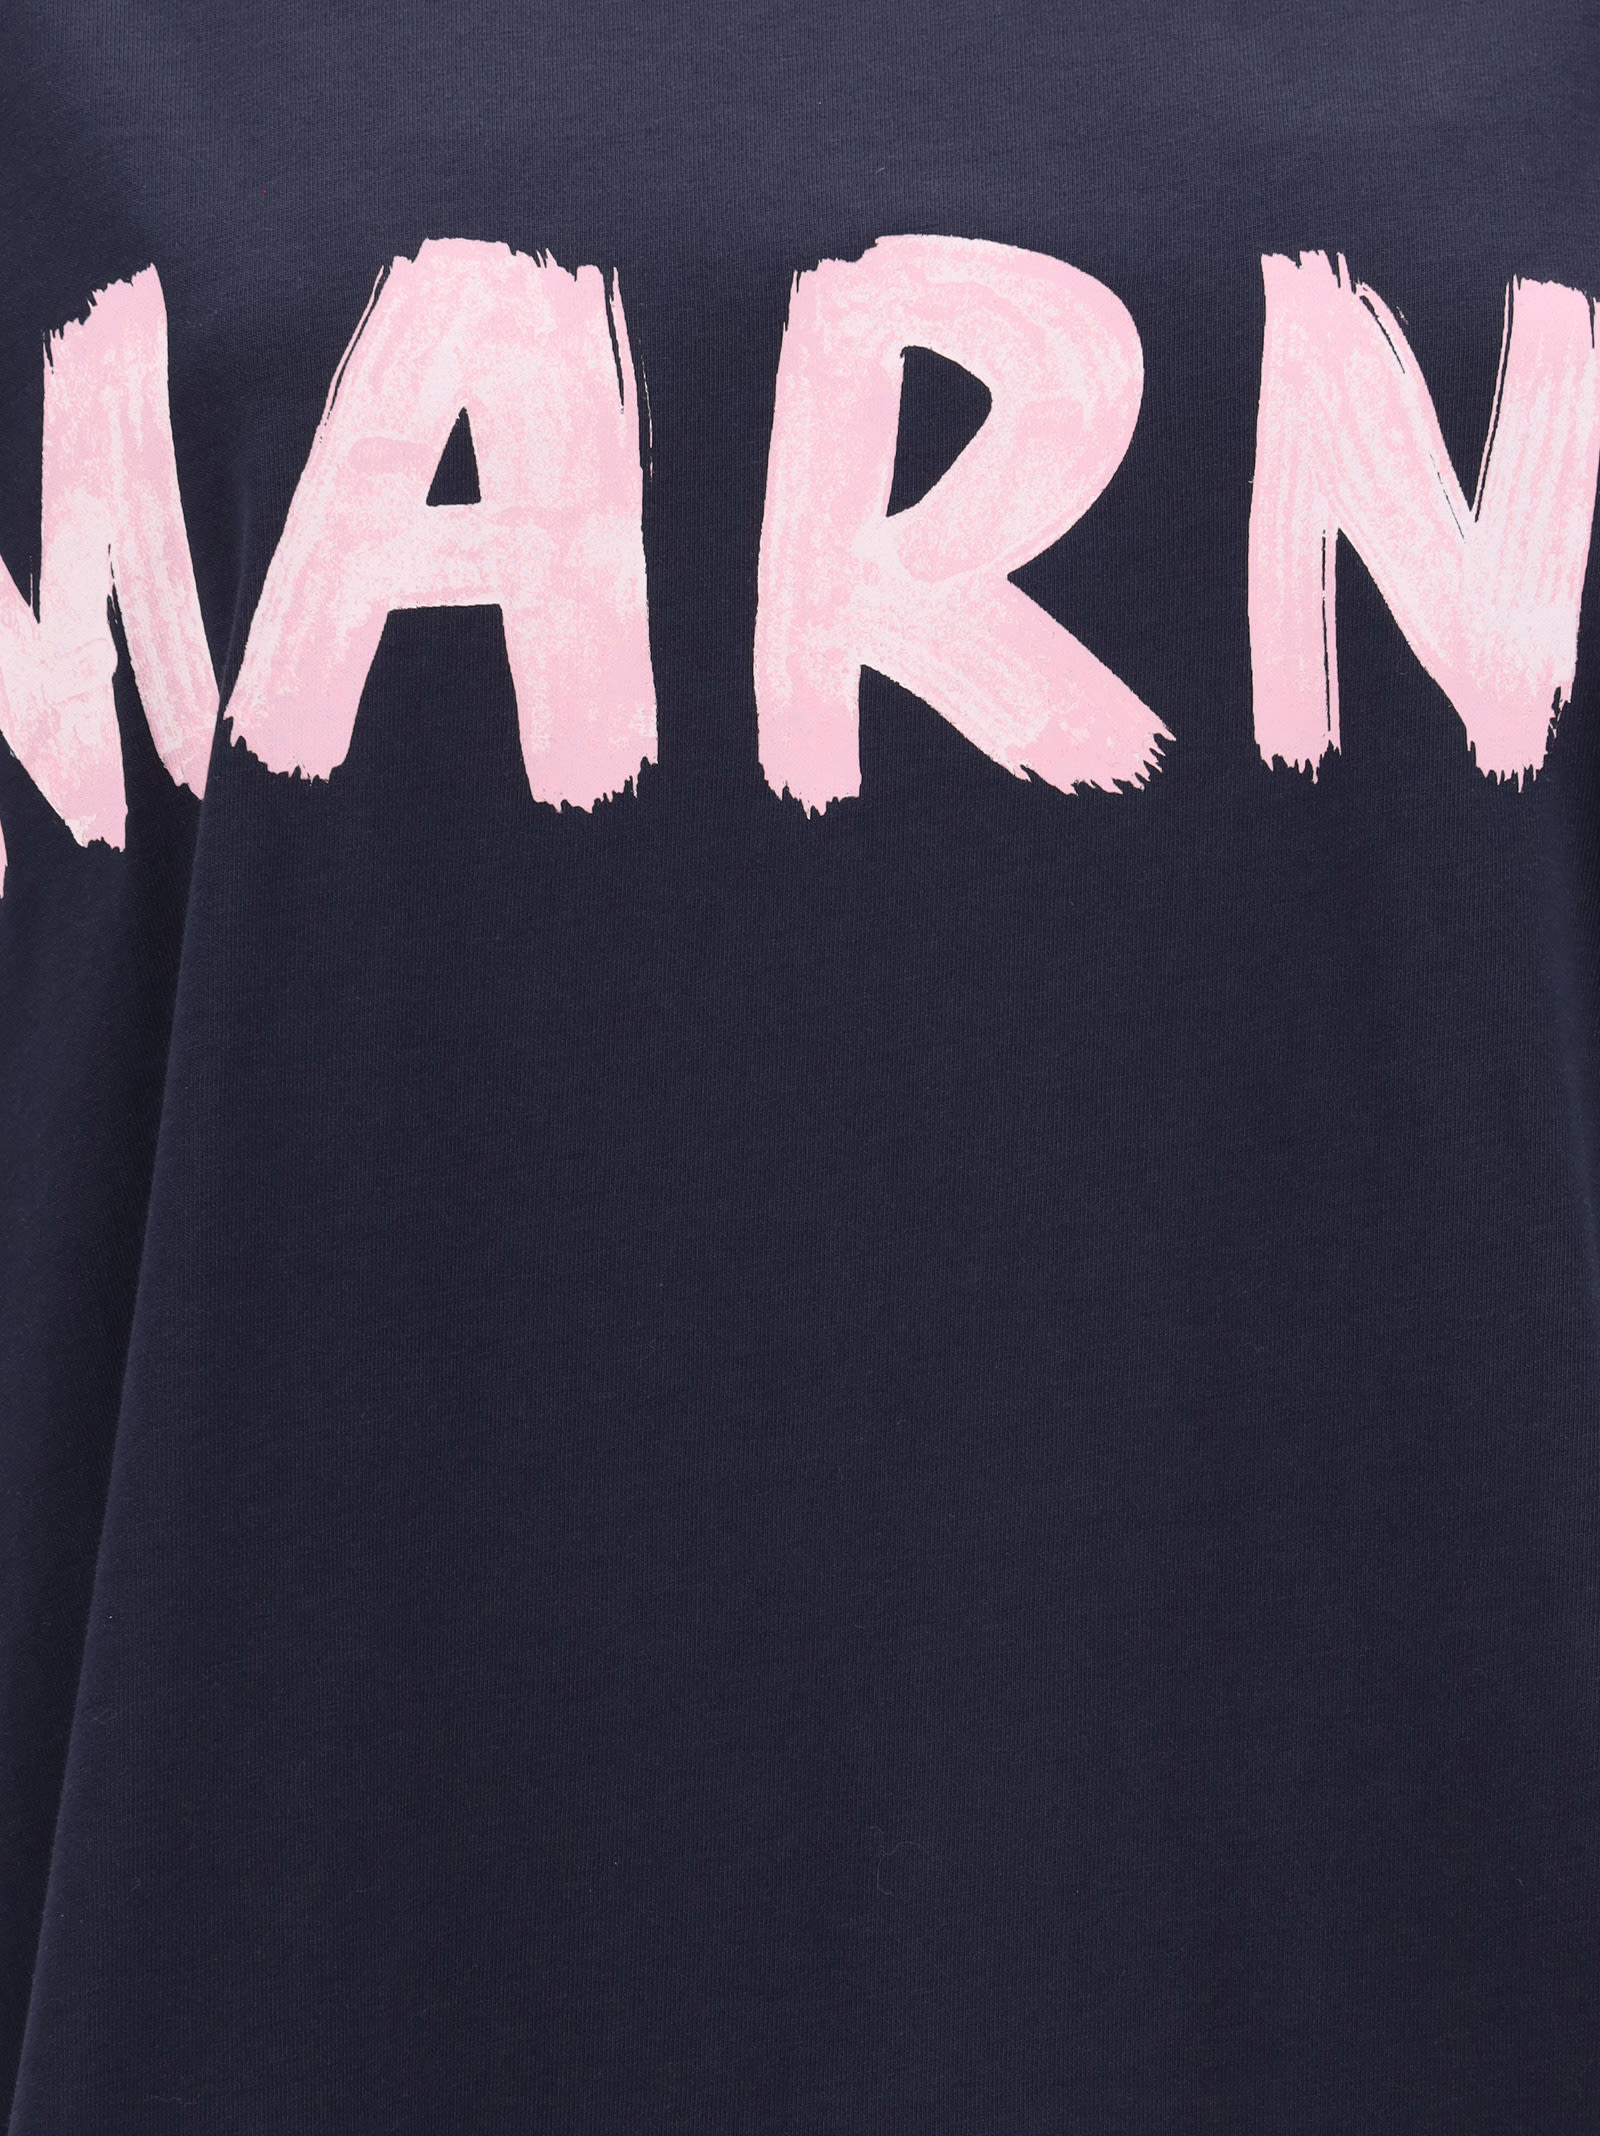 Shop Marni T-shirt In Blue